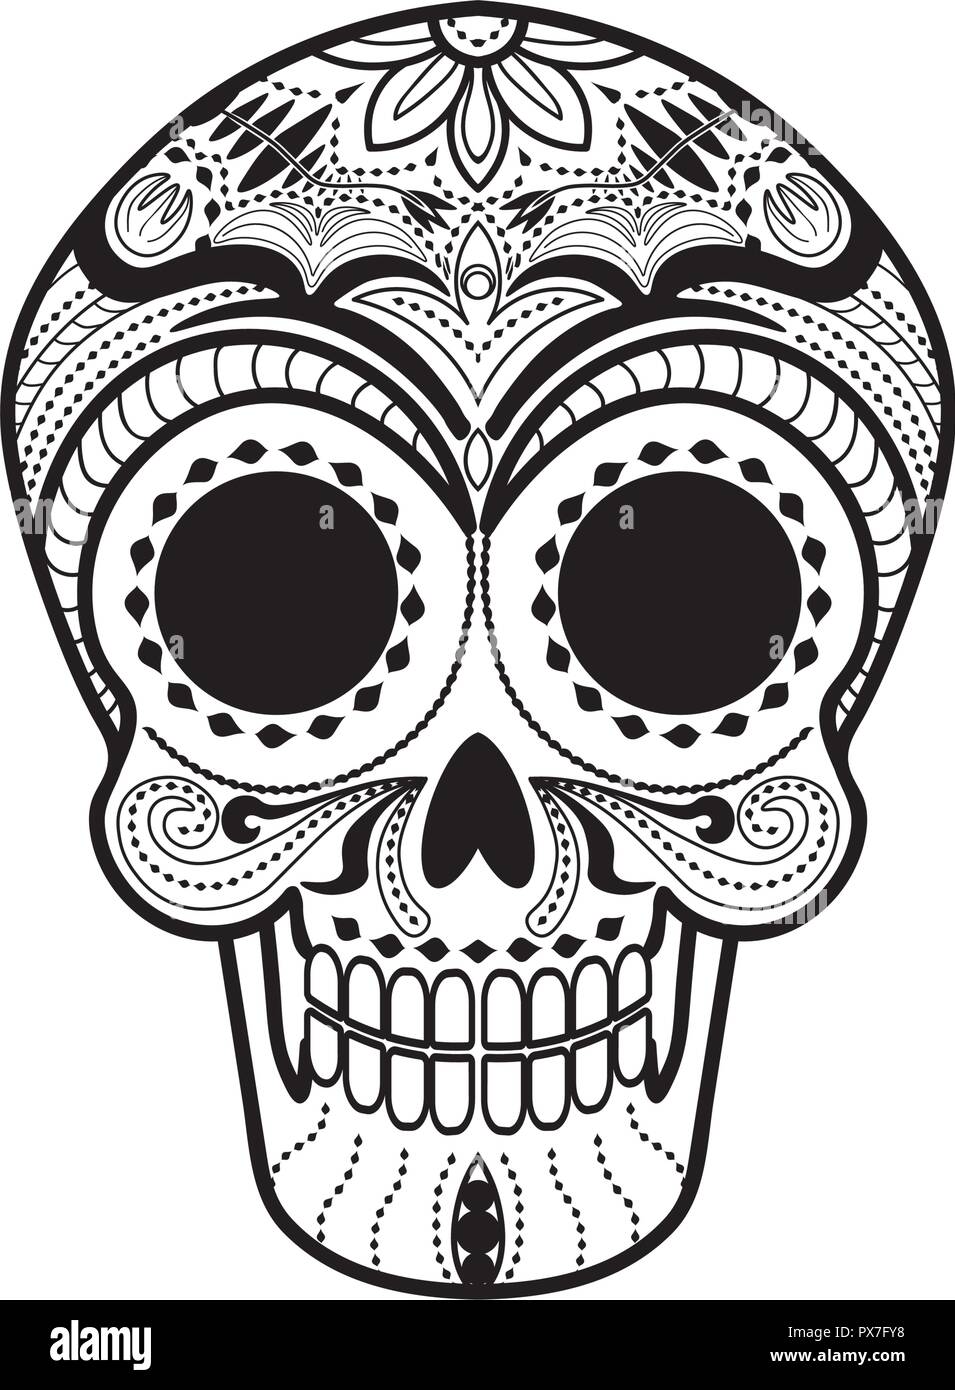 Crâne mexicain Calavera Illustration de Vecteur